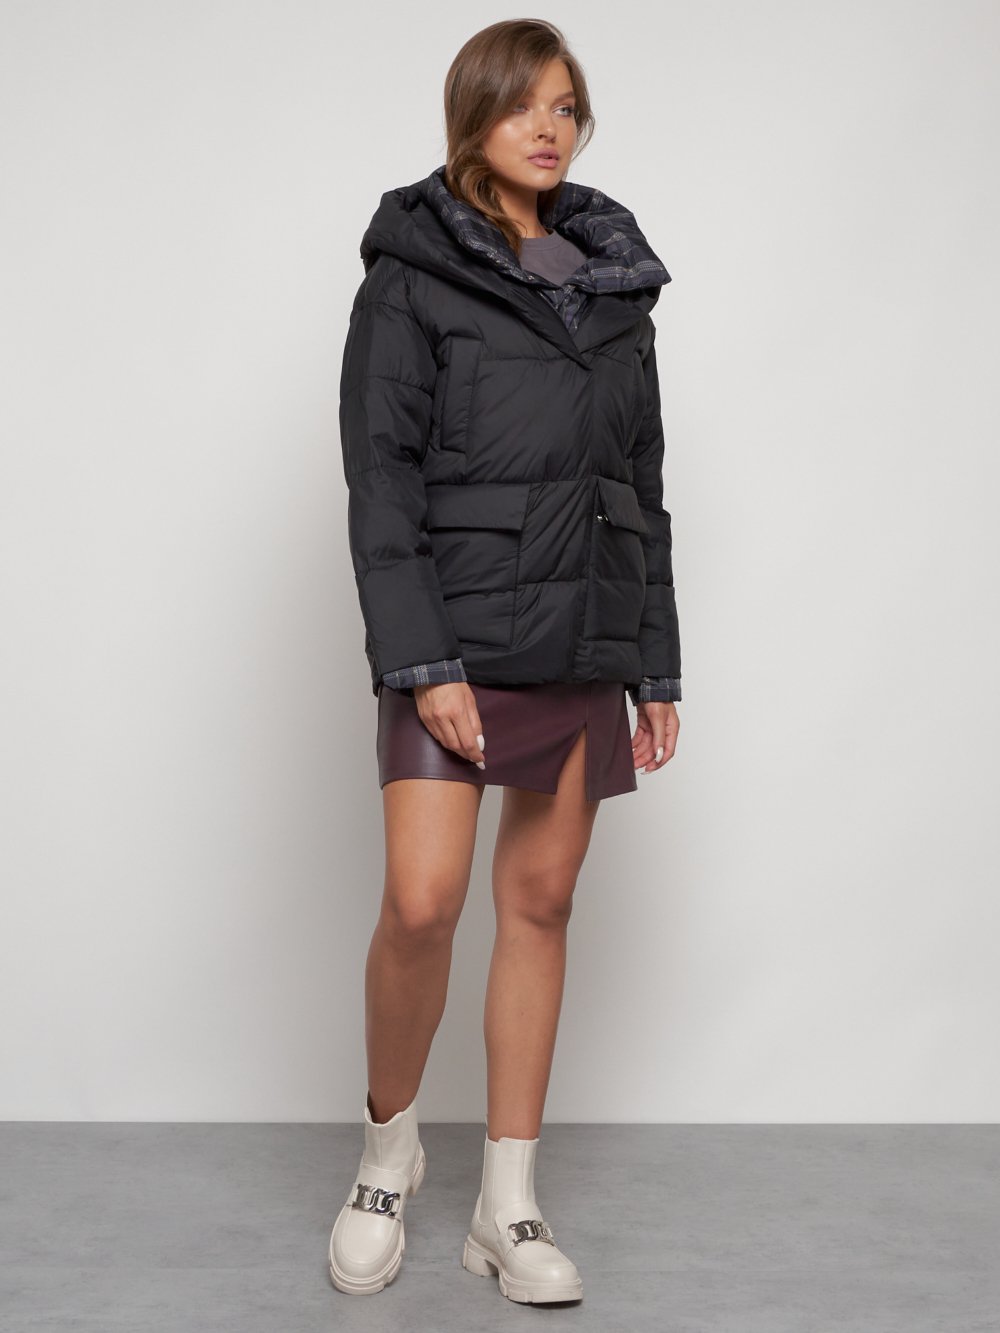 Купить куртку женскую зимнюю оптом от производителя недорого в Москве 133105Ch 1